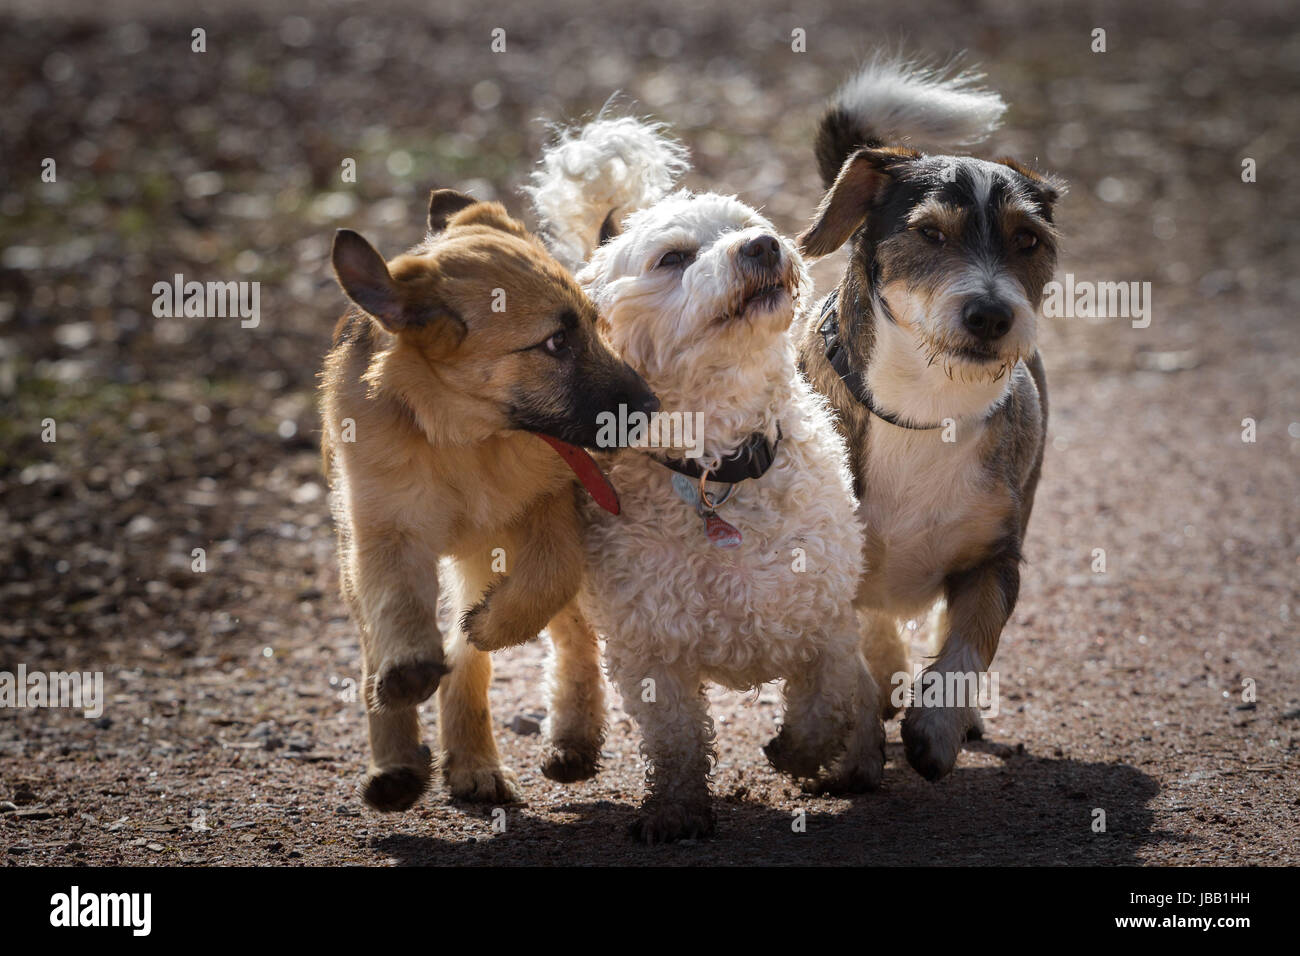 Ein Welpen und zwei Erwachsene Mischlingshunde bilden zusammen die drei Vierbeinigen Musketiere. Die drei Hunde laufen spielend gemeinsam einen Weg entlang. Stock Photo